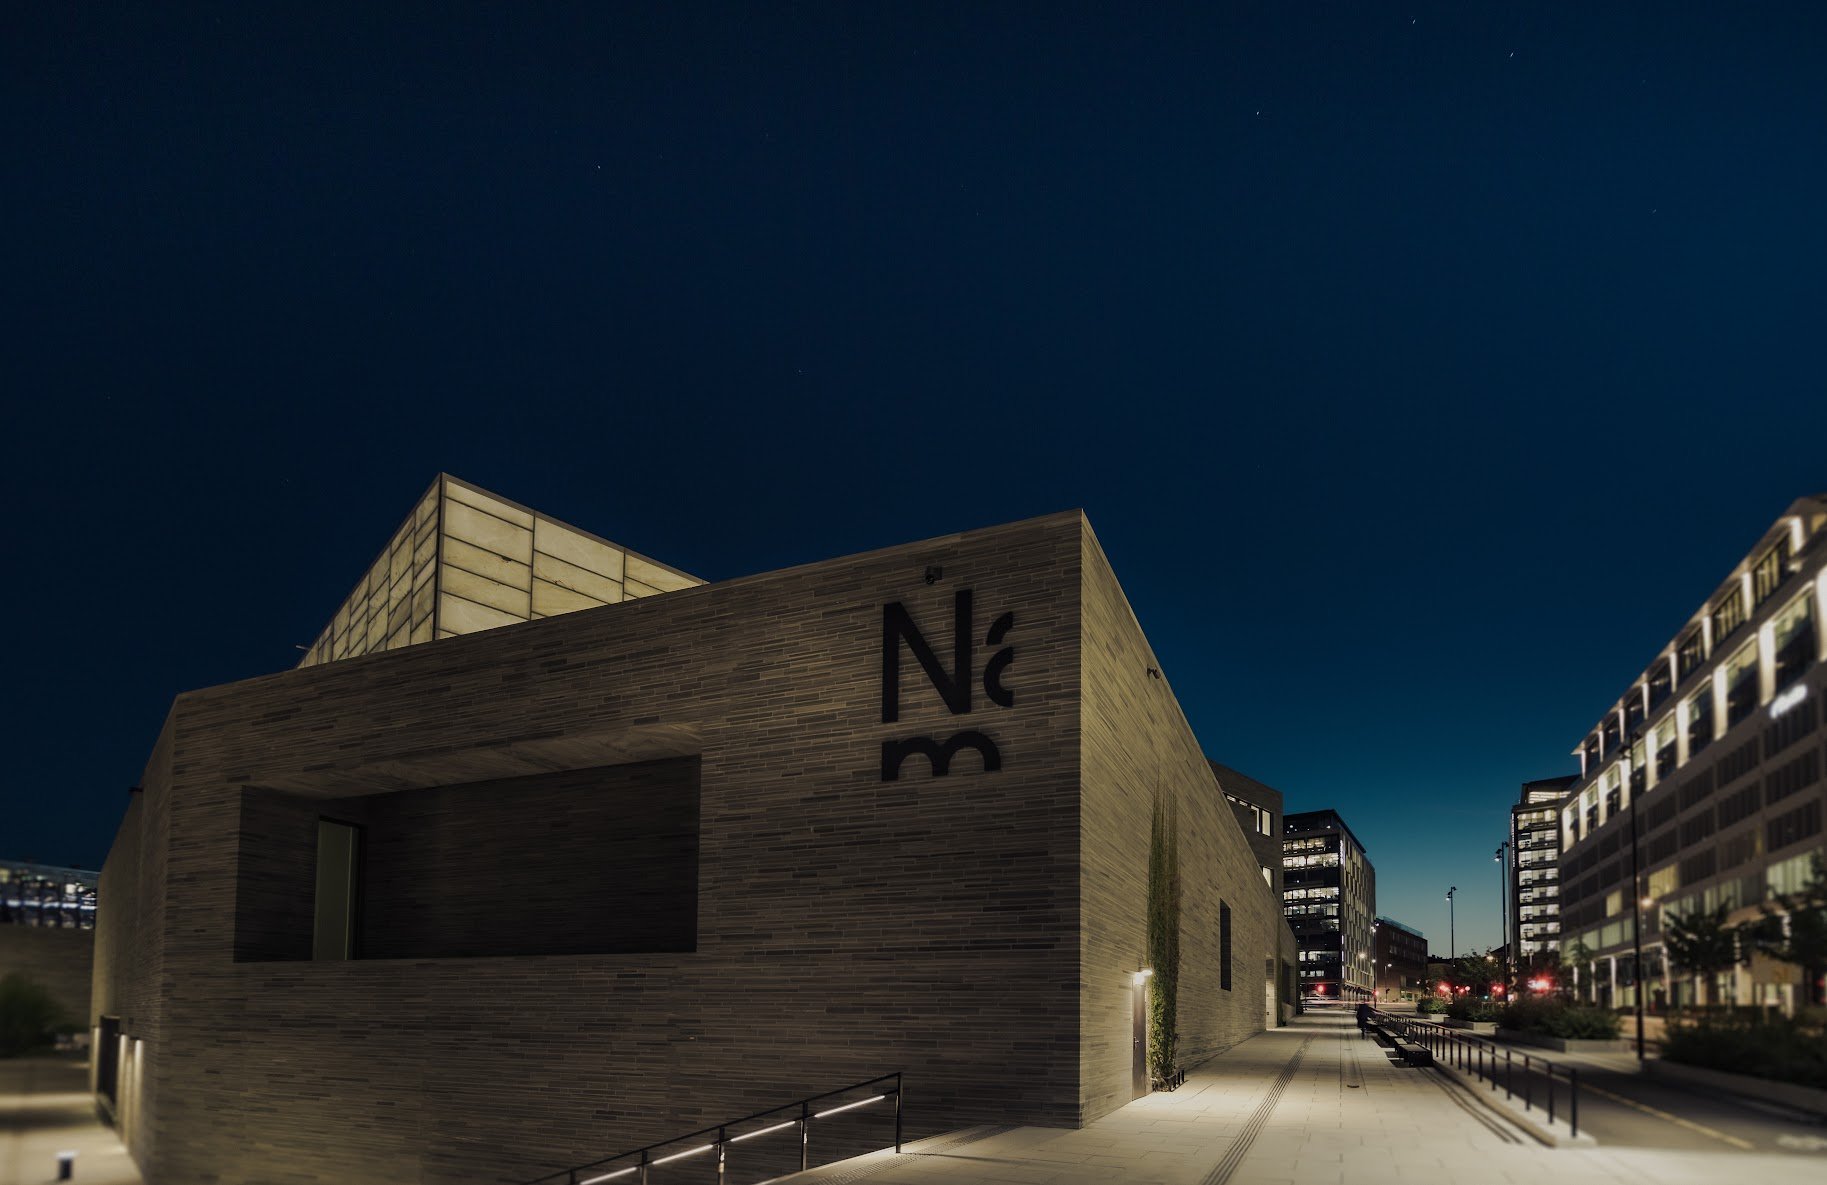 Nasjonalmuseet in Oslo used Interaxo in the project